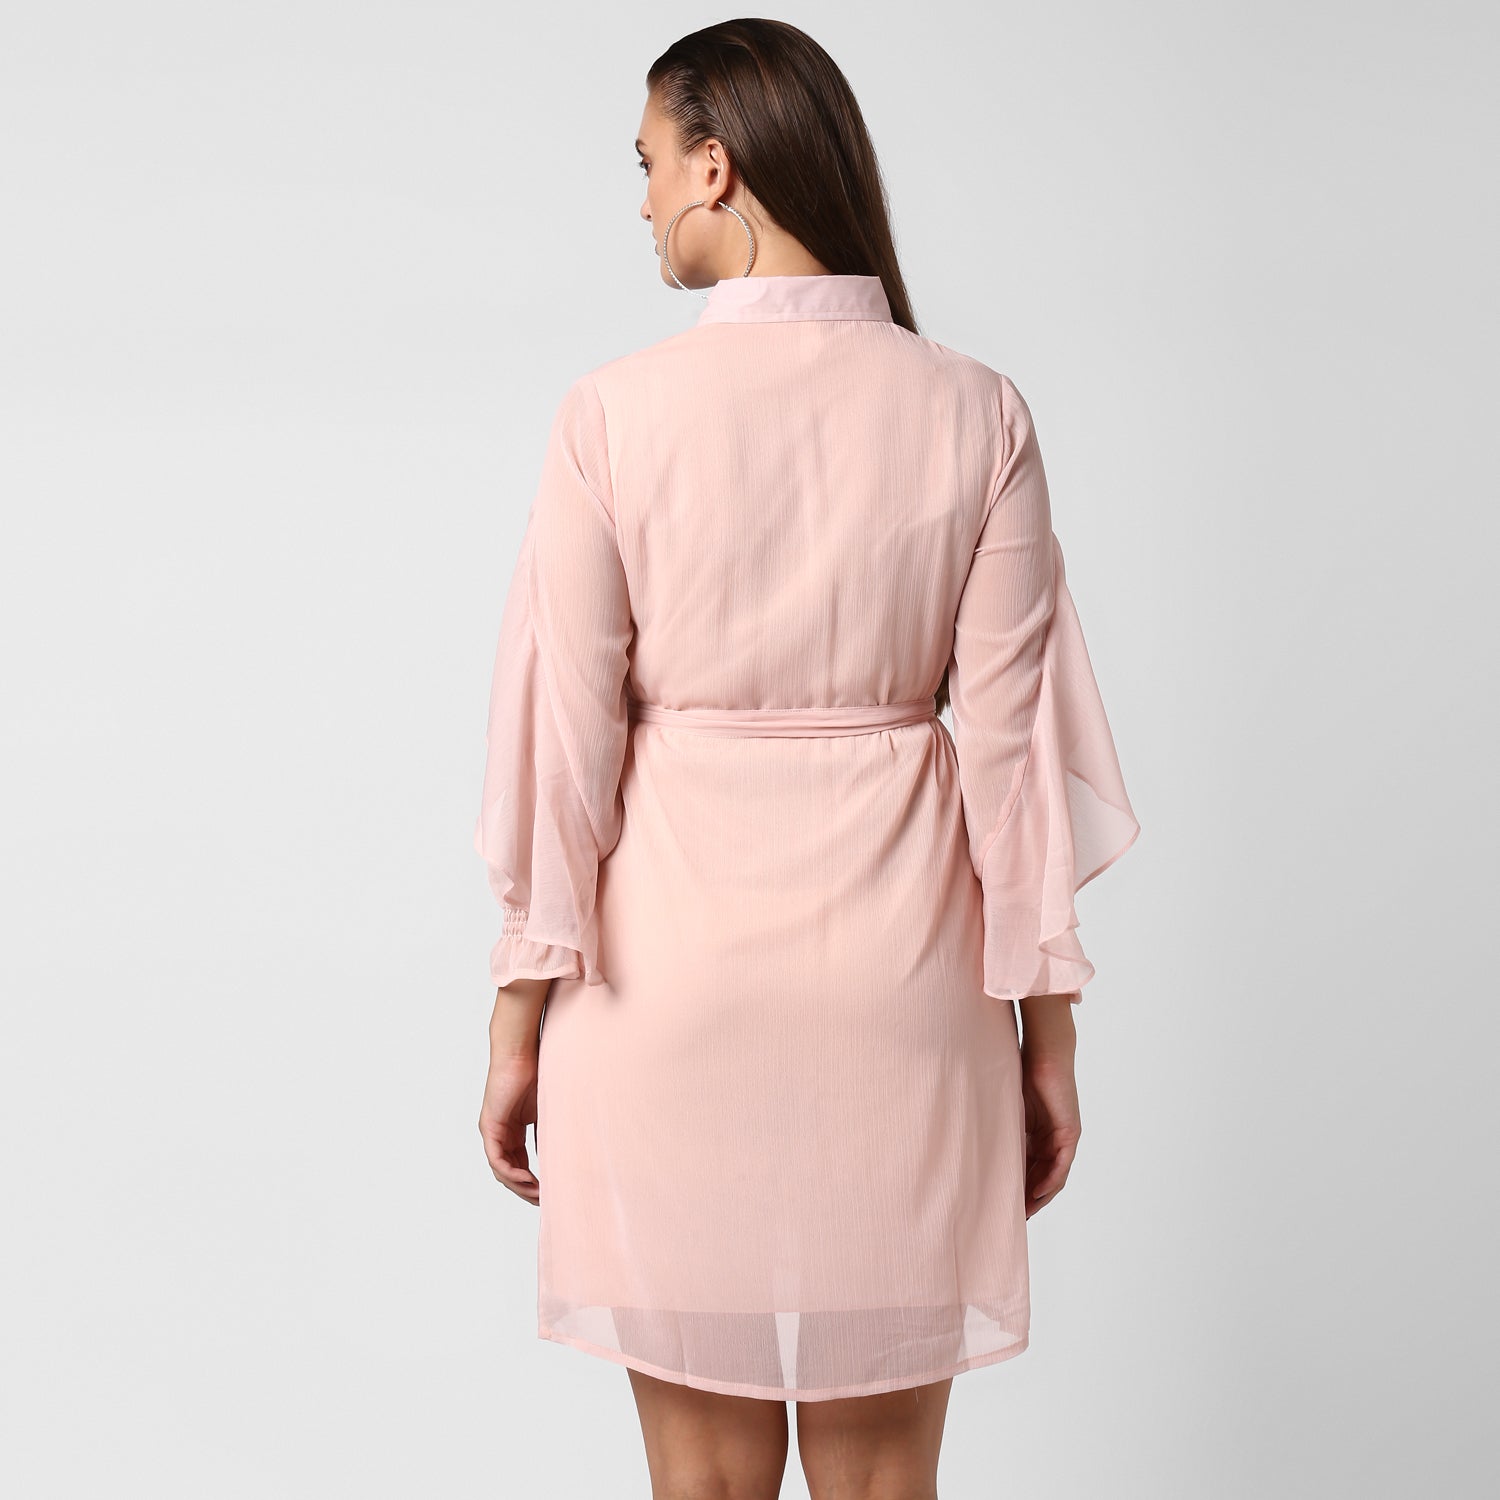 Women's Pink Chiffon Dress - StyleStone